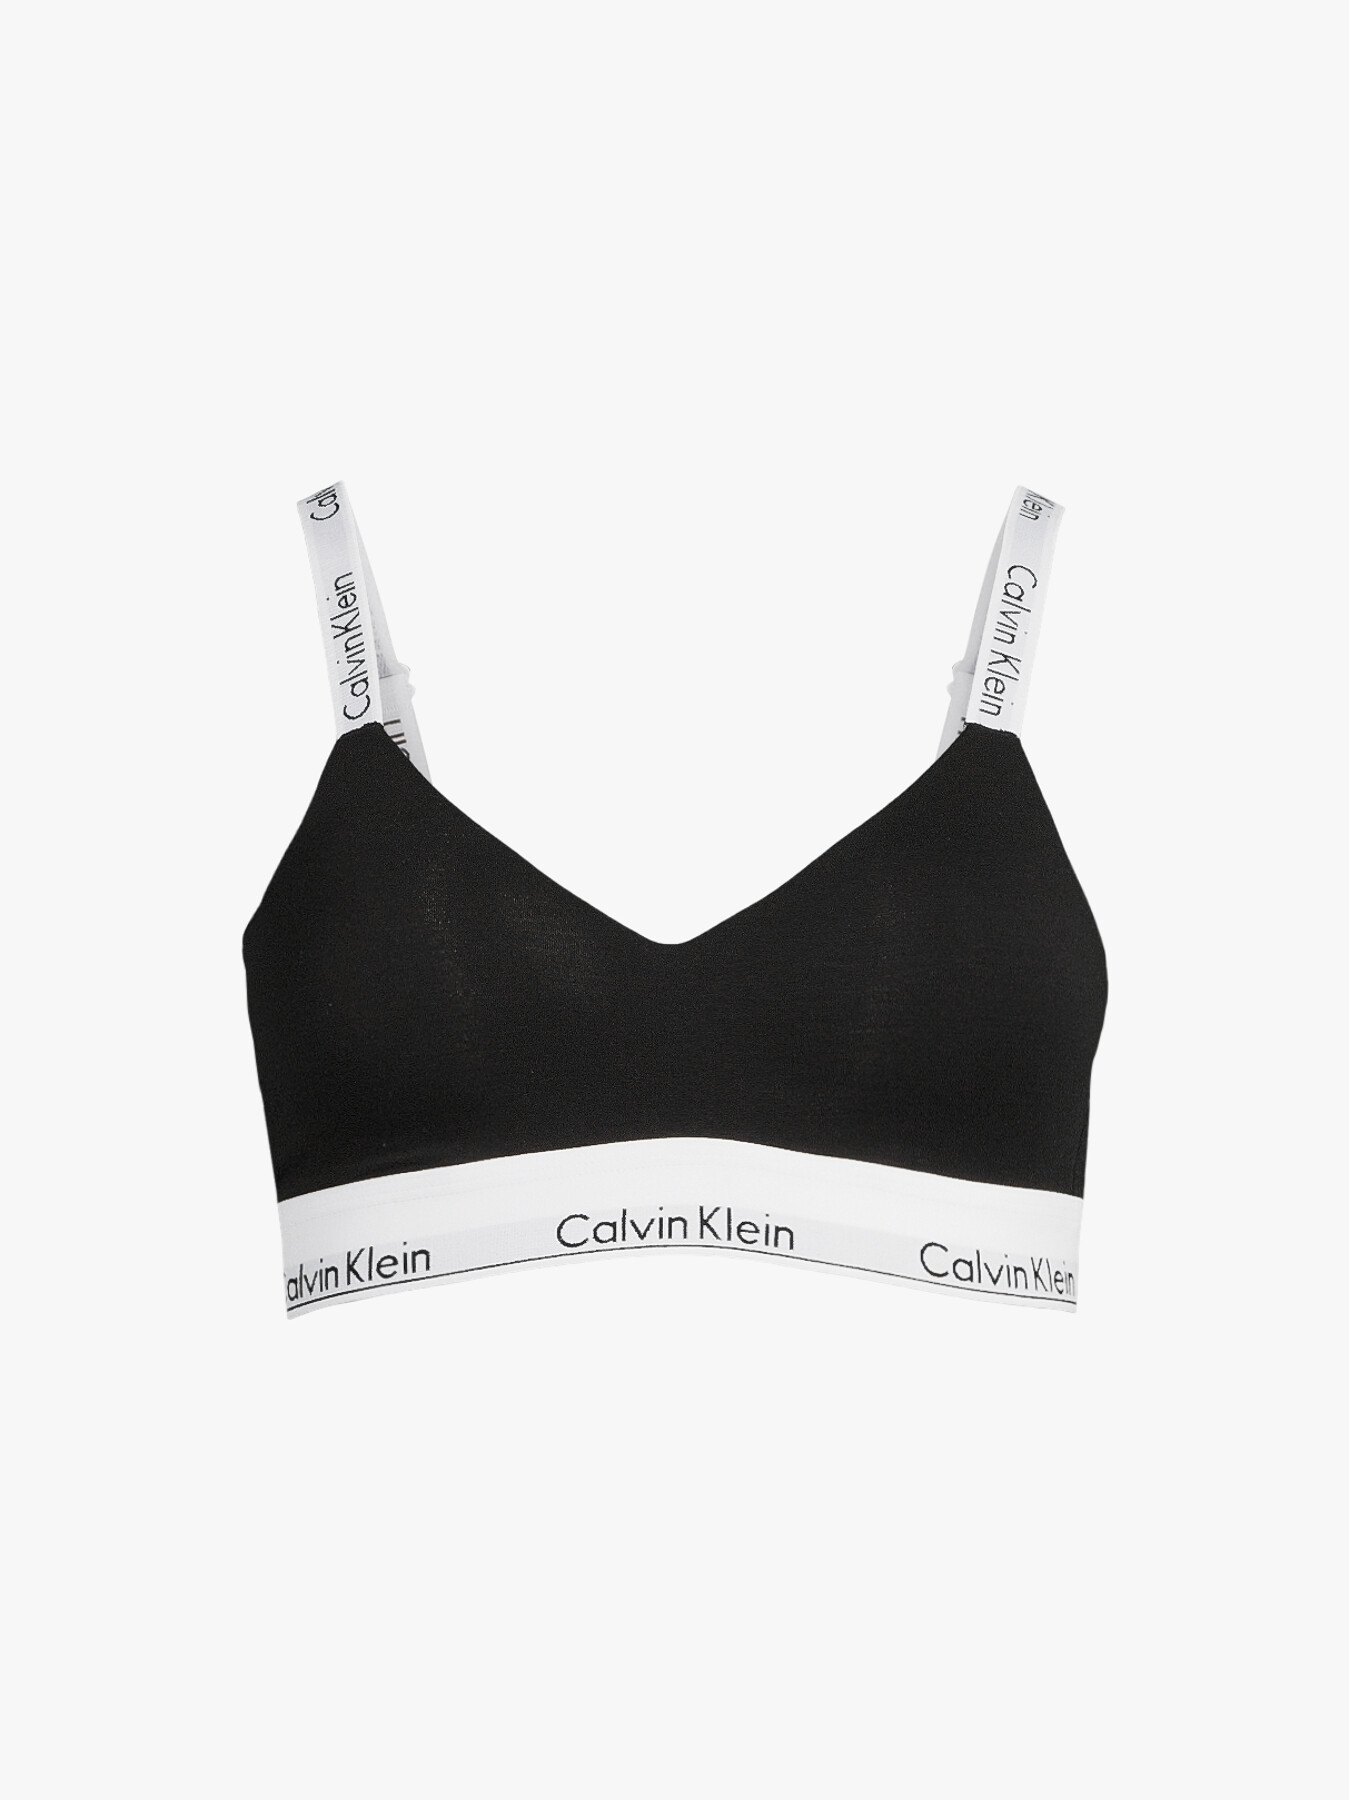 Calvin Klein Calvin Klein Modern Cotton Naturals Lightly Lined Bralette